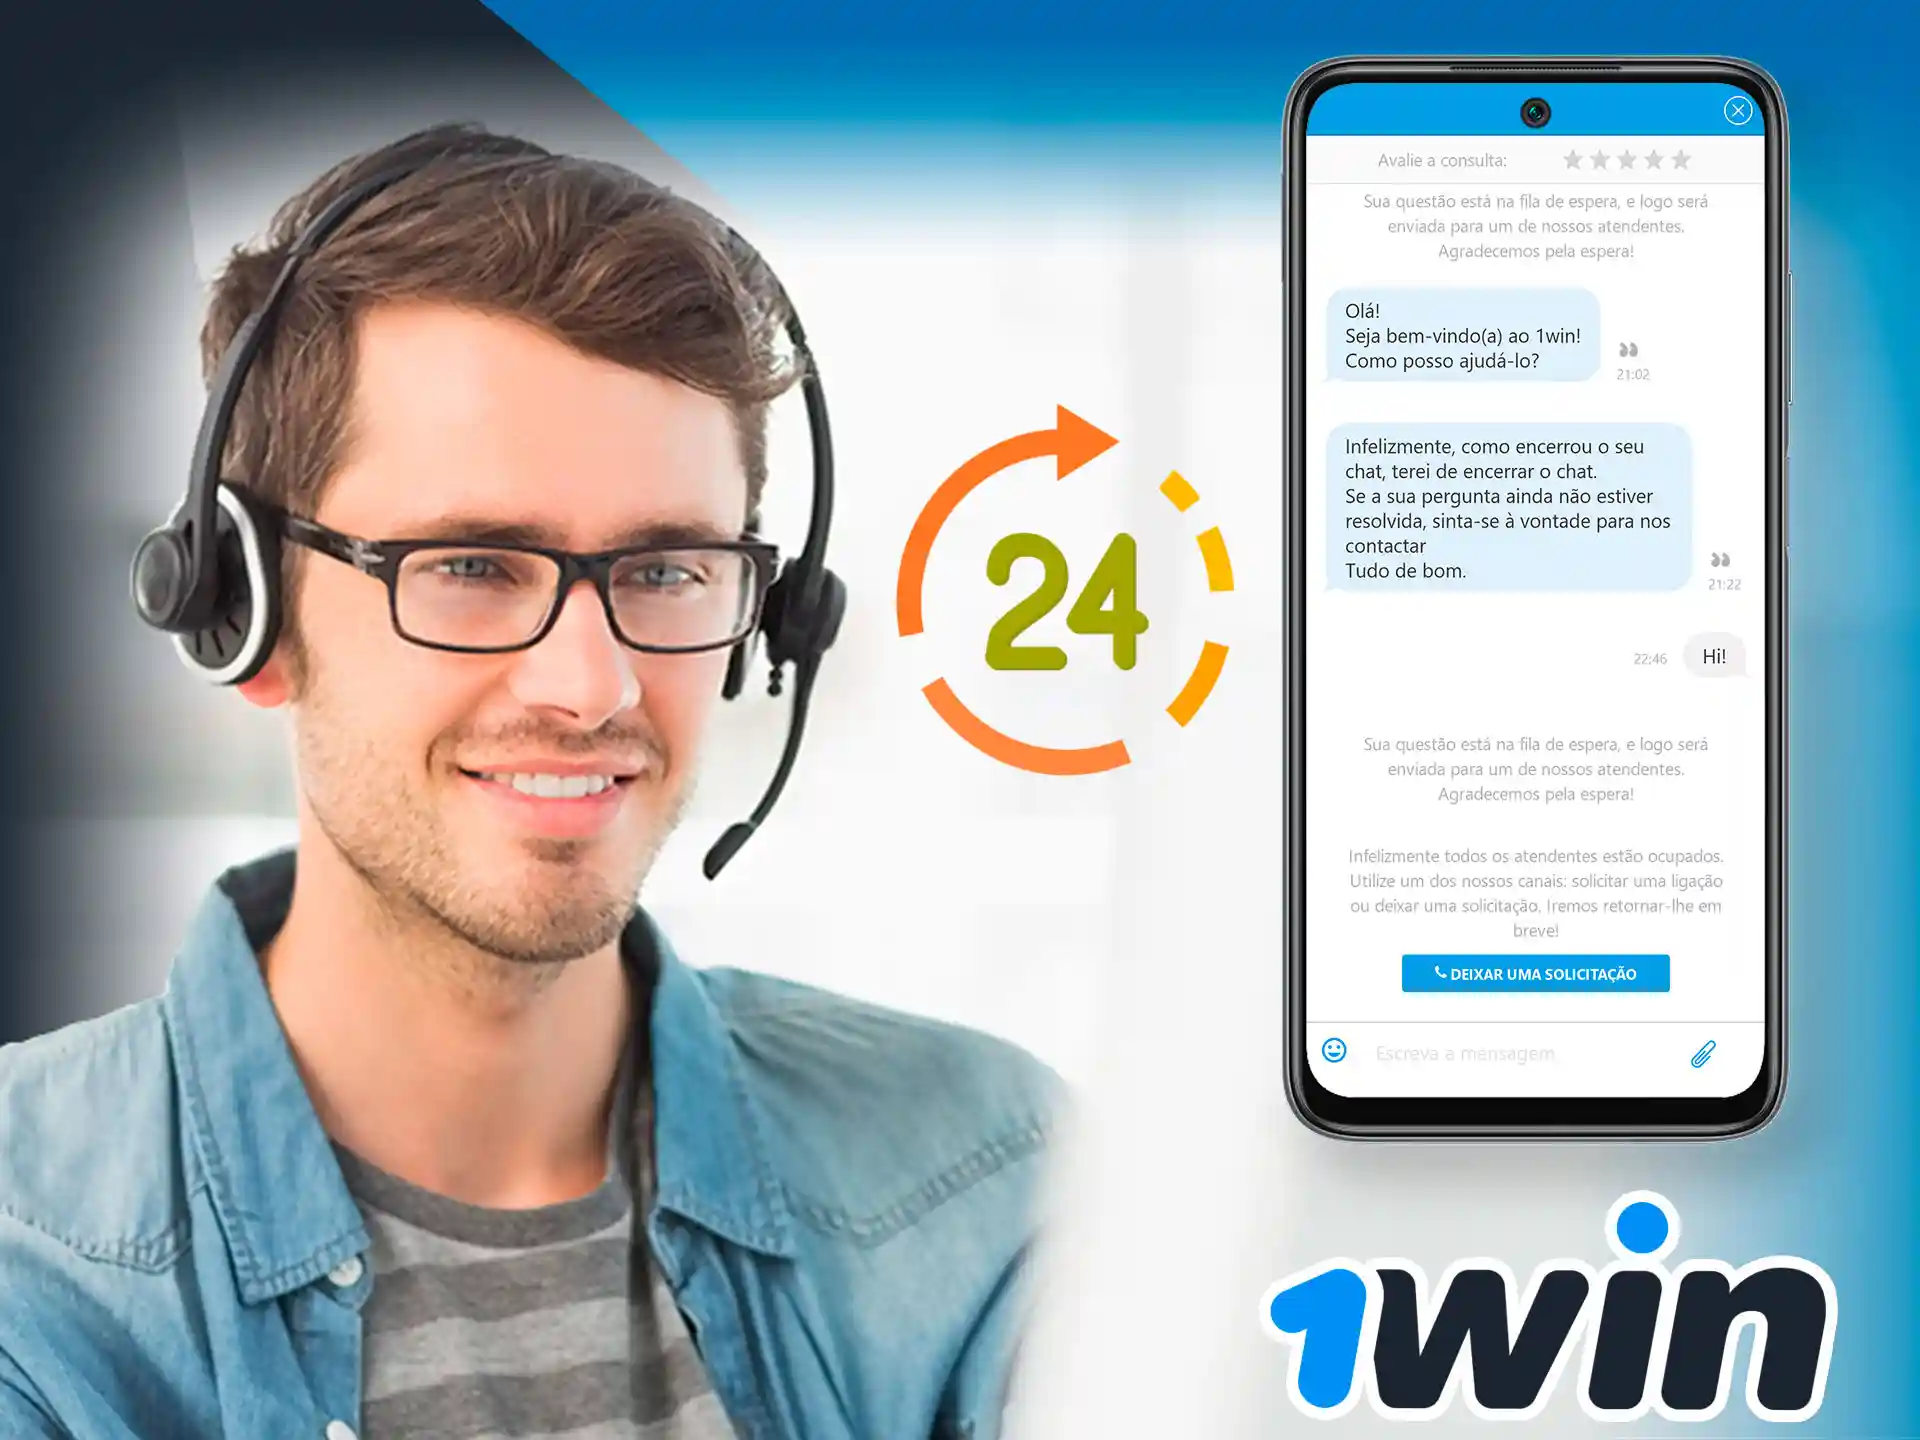 1win pode ser contatado a qualquer momento diretamente no aplicativo.